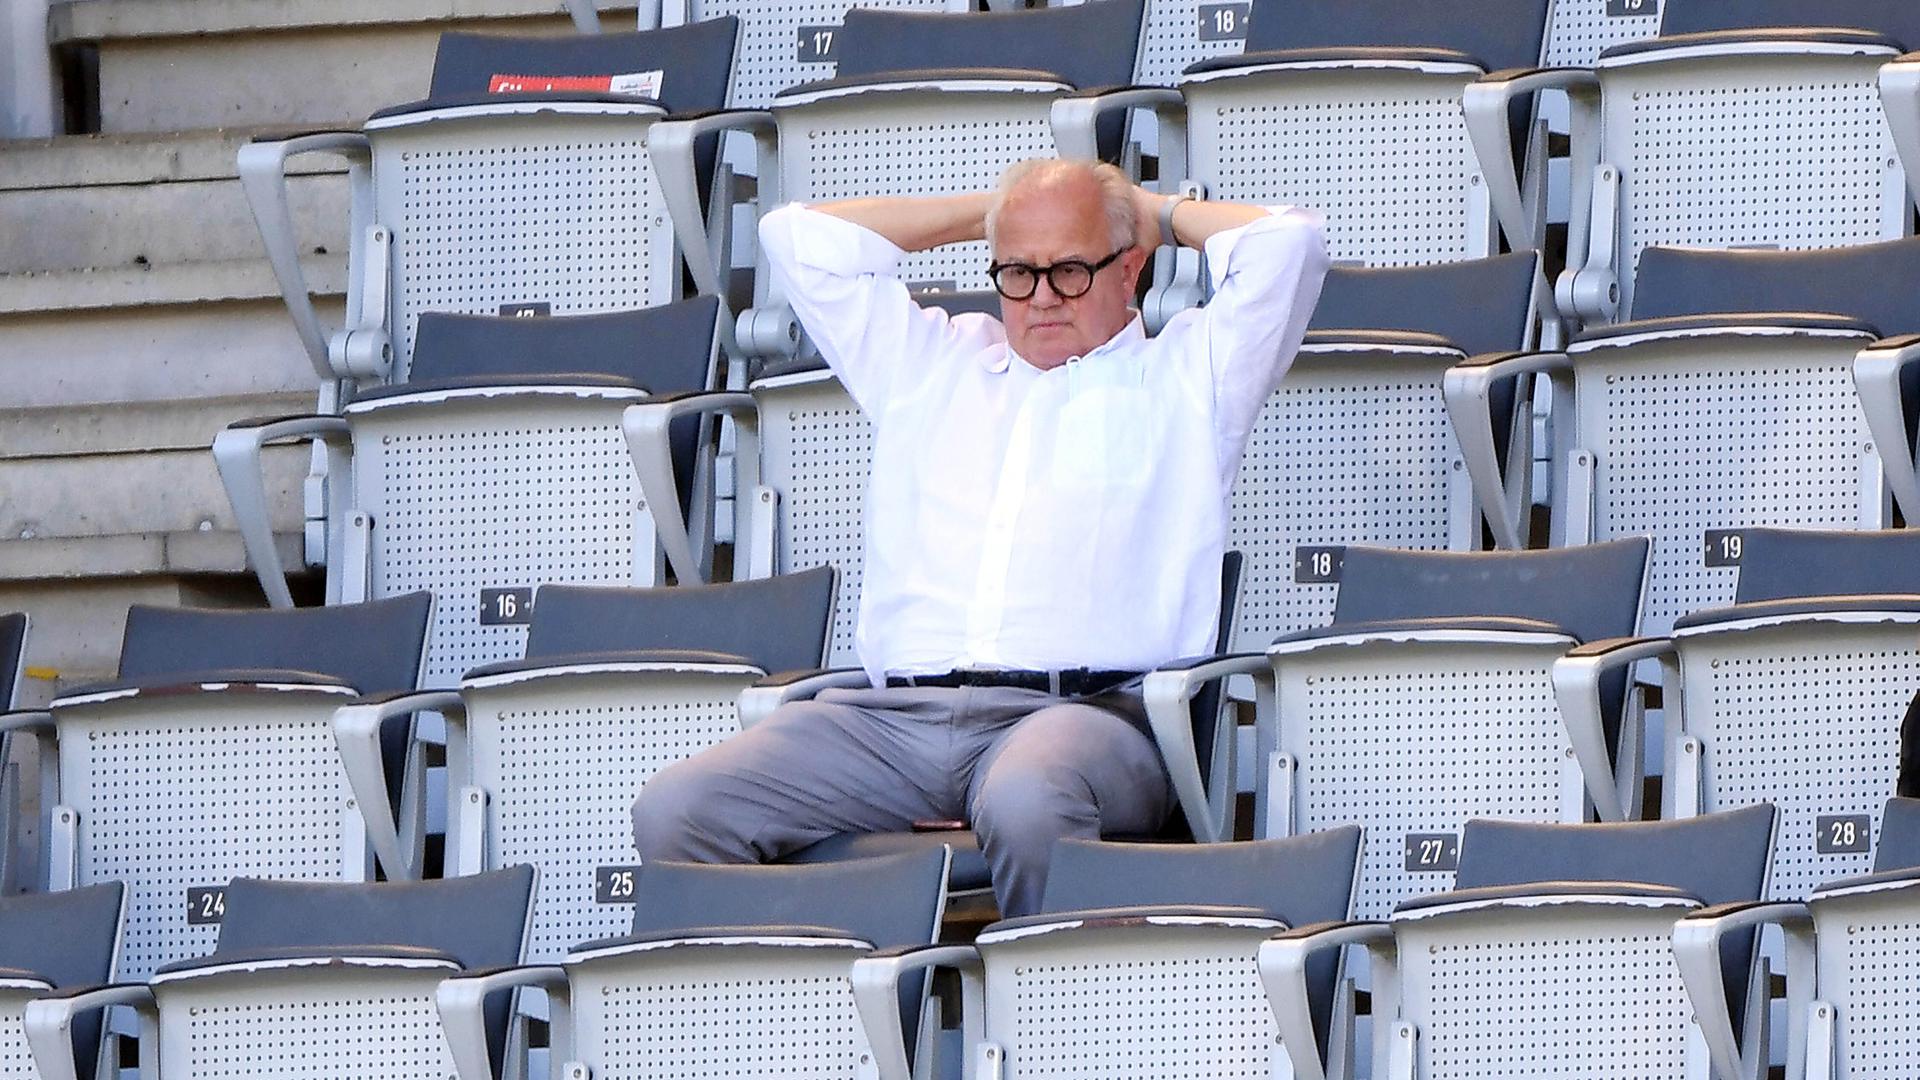 Fußball: Bundesliga, SC Freiburg - FC Schalke 04, 34. Spieltag im Schwarzwald-Stadion. Fritz Keller, Präsident des DFB, sitzt während des Spiels auf einer Tribüne. +++ dpa-Bildfunk +++